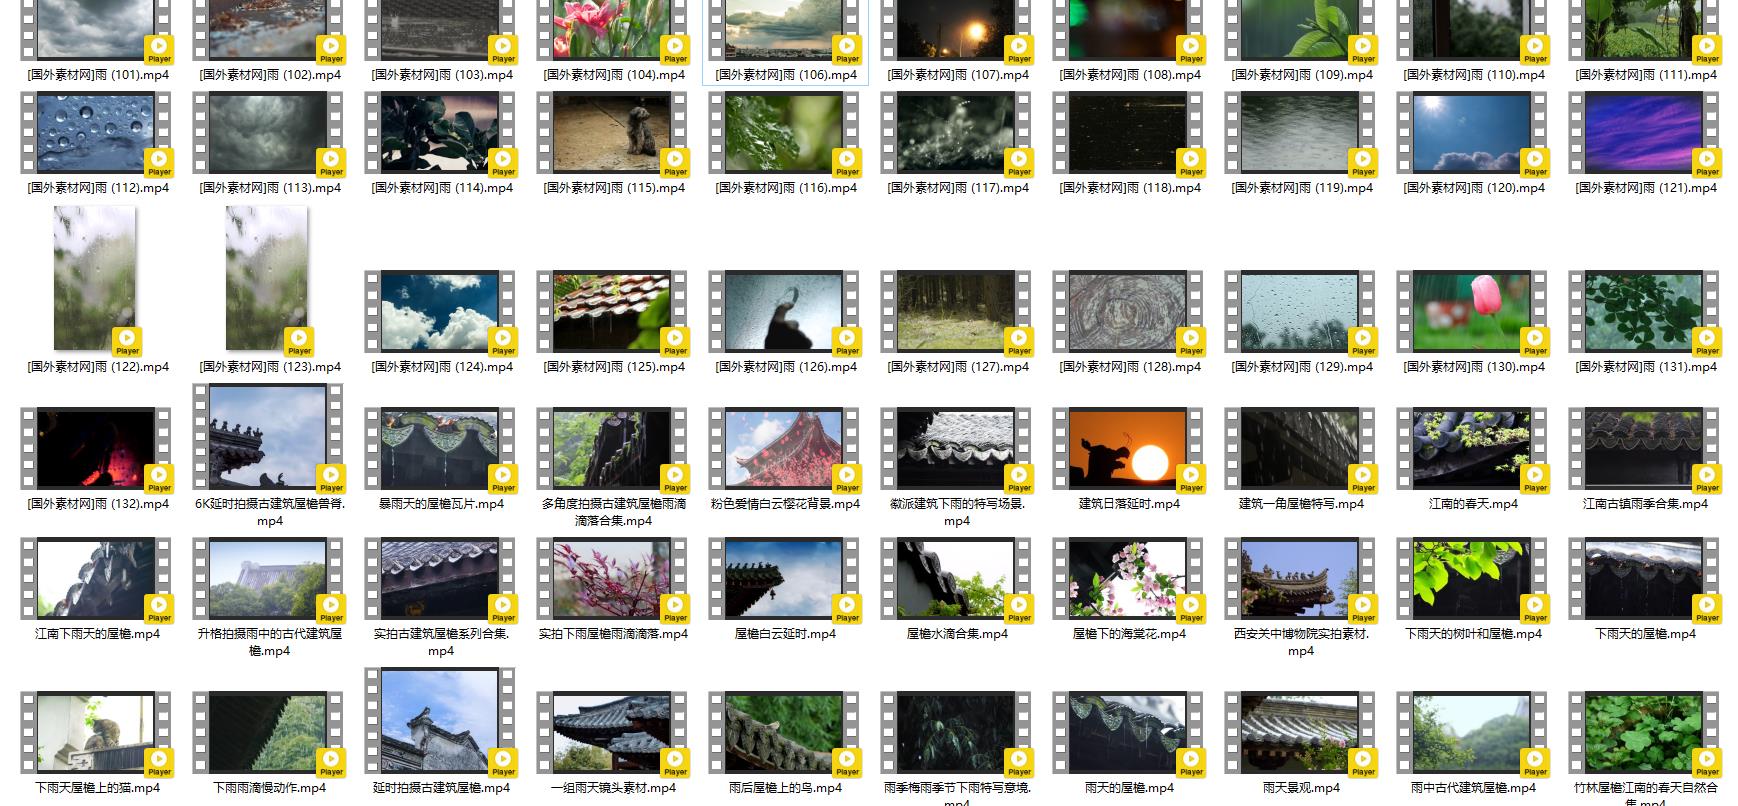 下雨视频素材,182个雨景视频大合集打包